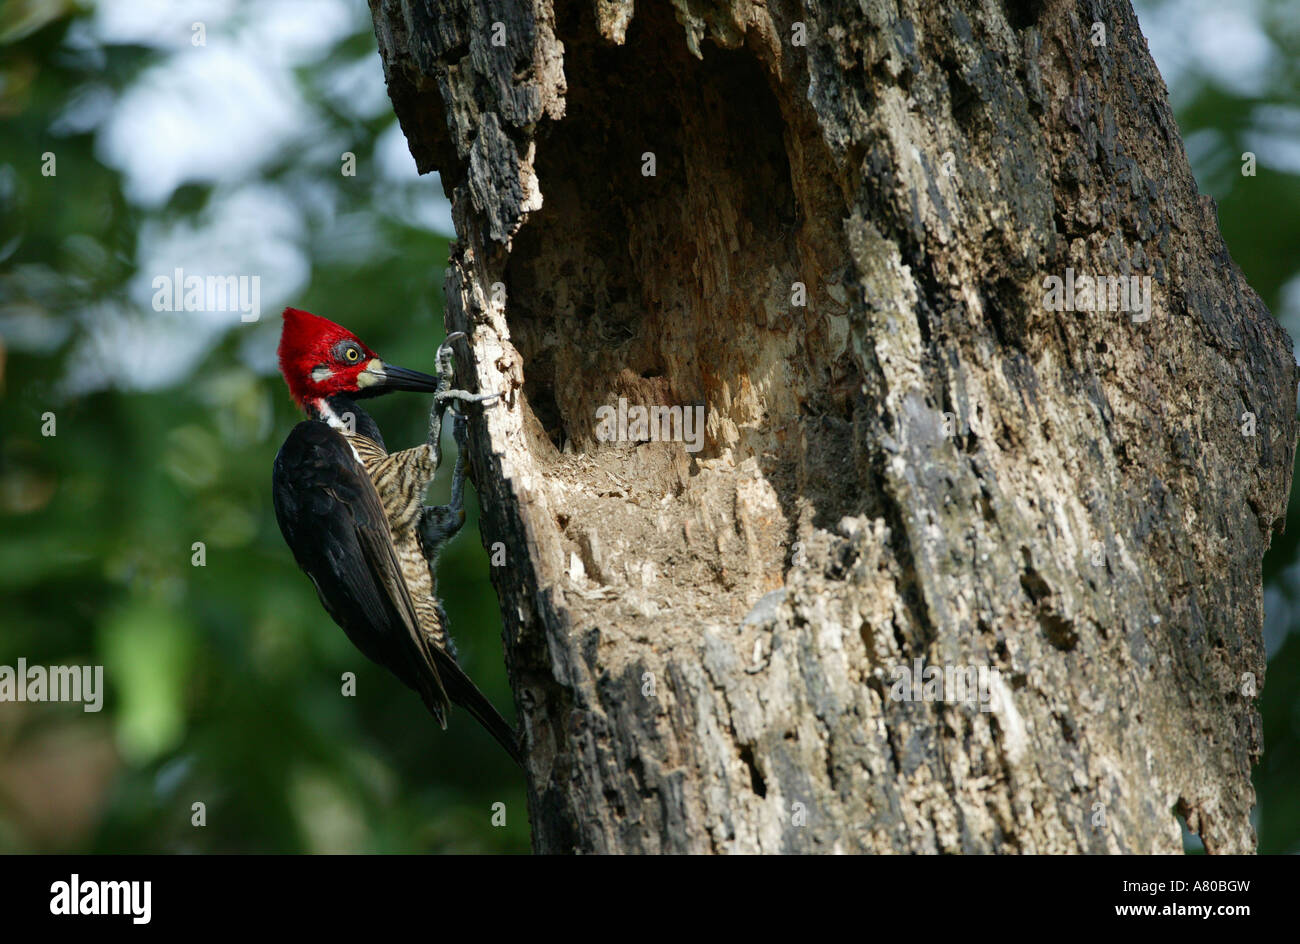 Crimson-crested Woodpecker, Campephilus melanoleucos, in Metropolitan park, Republic of Panama. Stock Photo